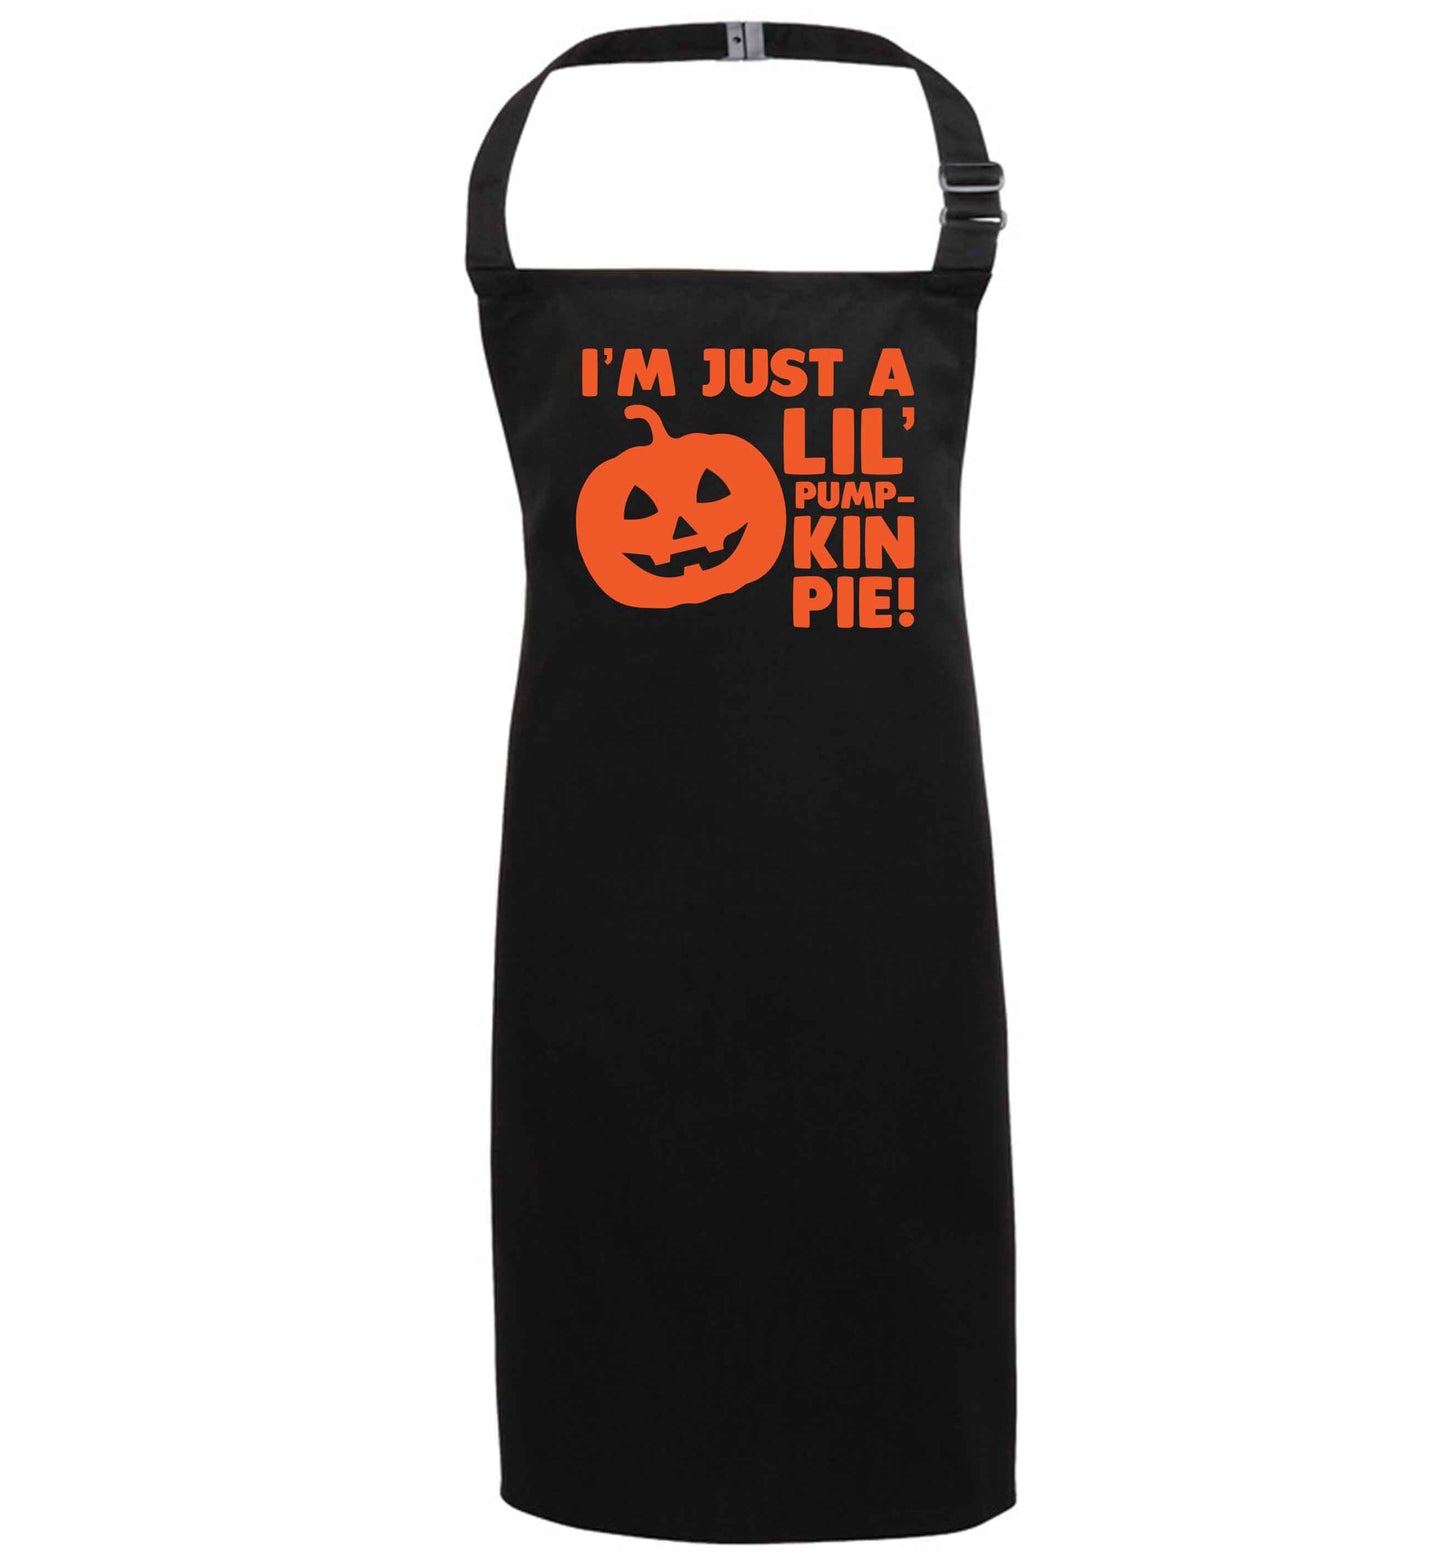 I'm just a lil' pumpkin pie black apron 7-10 years